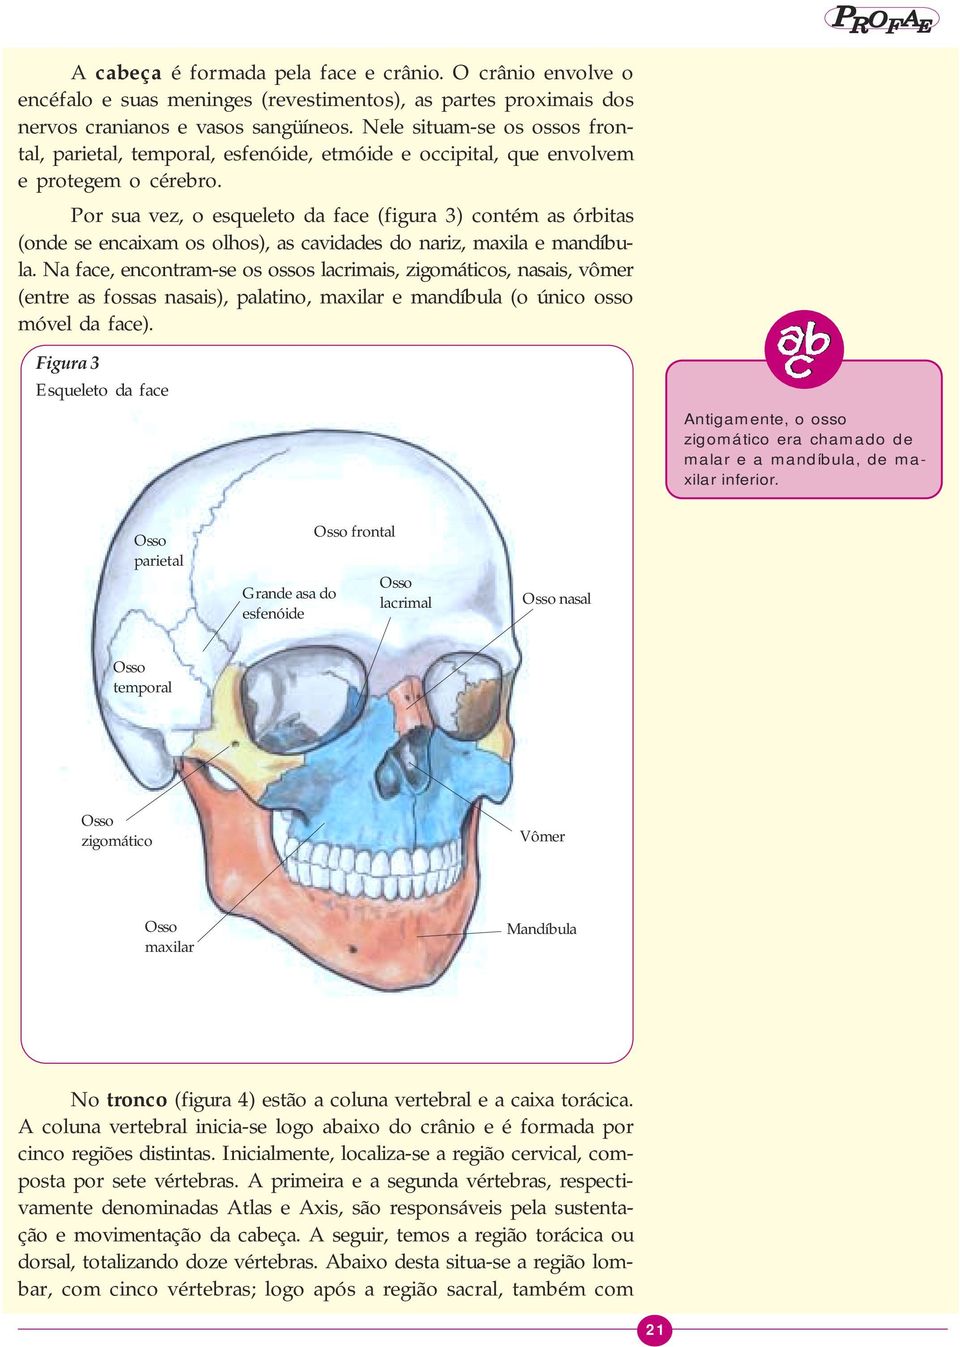 Por sua vez, o esqueleto da face (figura 3) contém as órbitas (onde se encaixam os olhos), as cavidades do nariz, maxila e mandíbula.